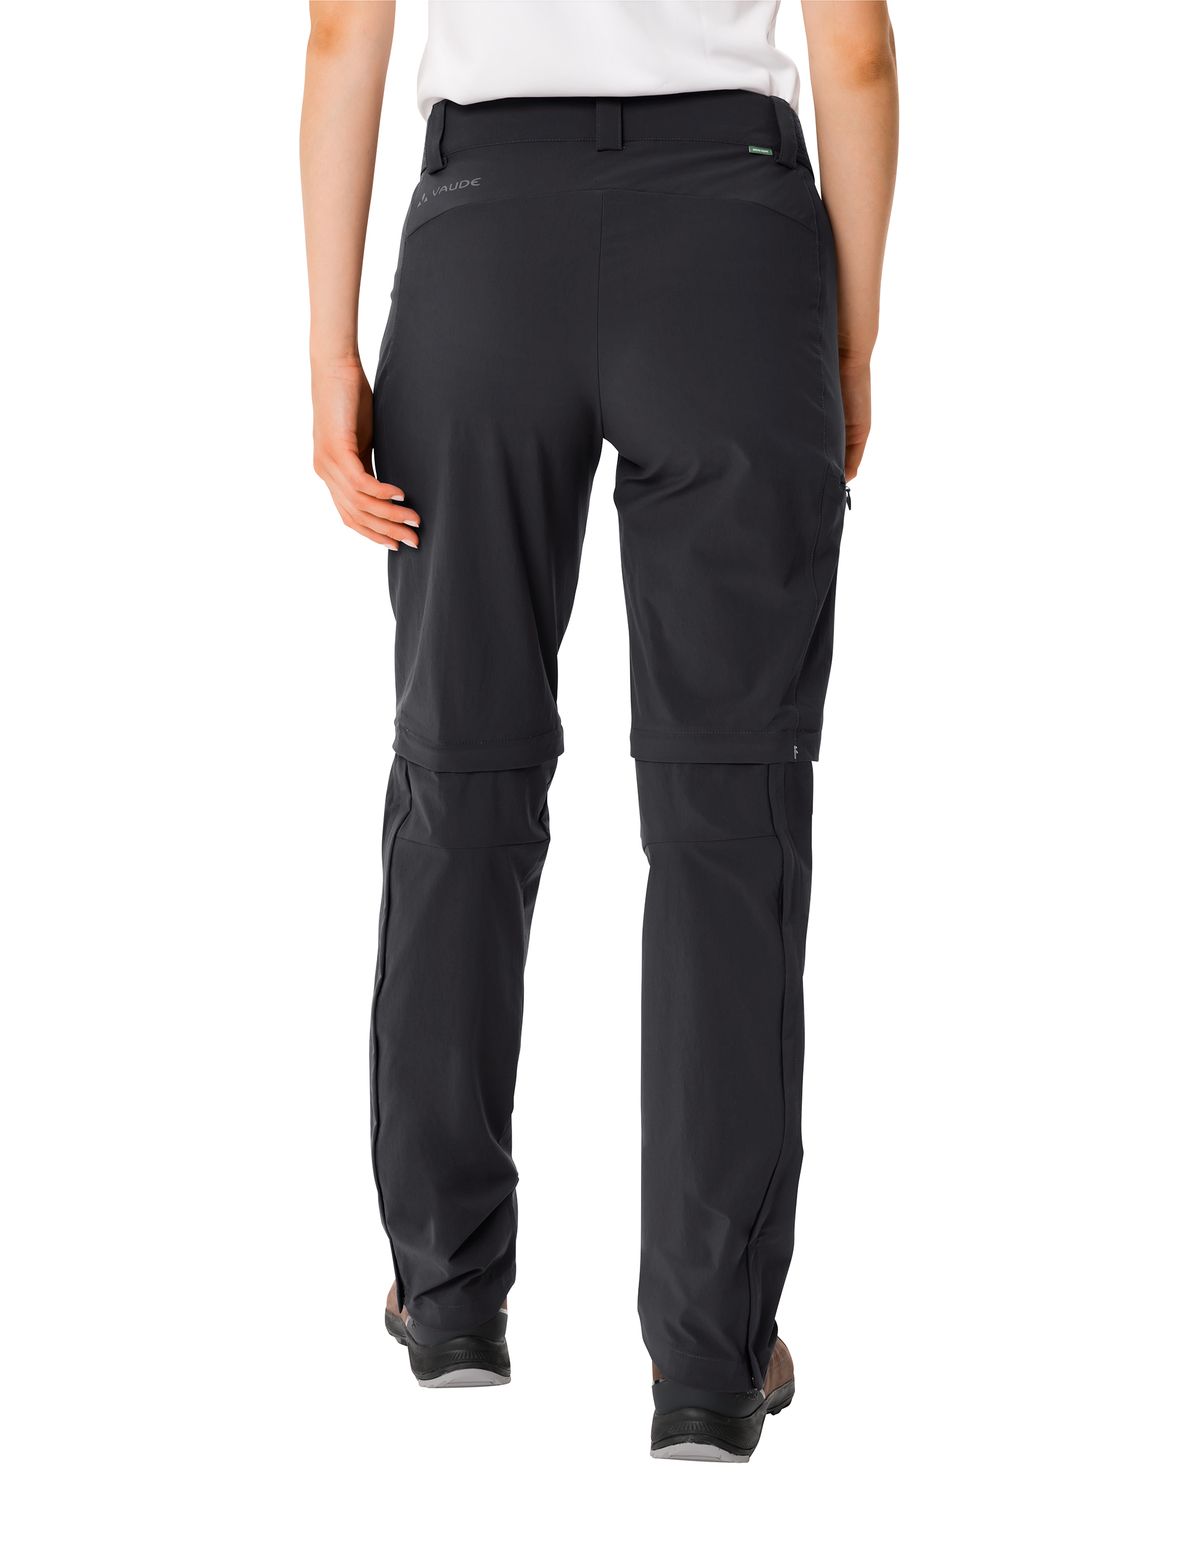 Women's Farley Stretch ZO T-Zip Pants II Damen Trekkinghose Zip-Funktion